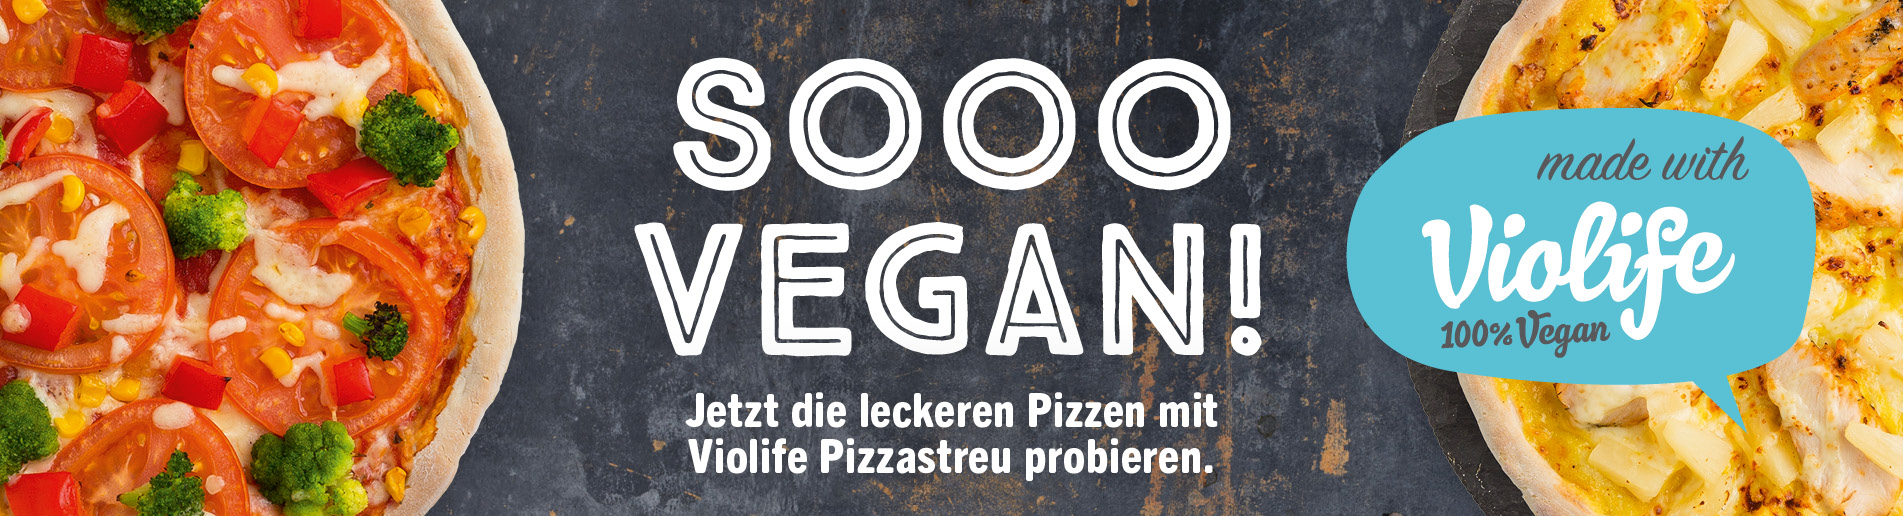 Zwei Pizzen mit der Aufschrift soooo vegan.